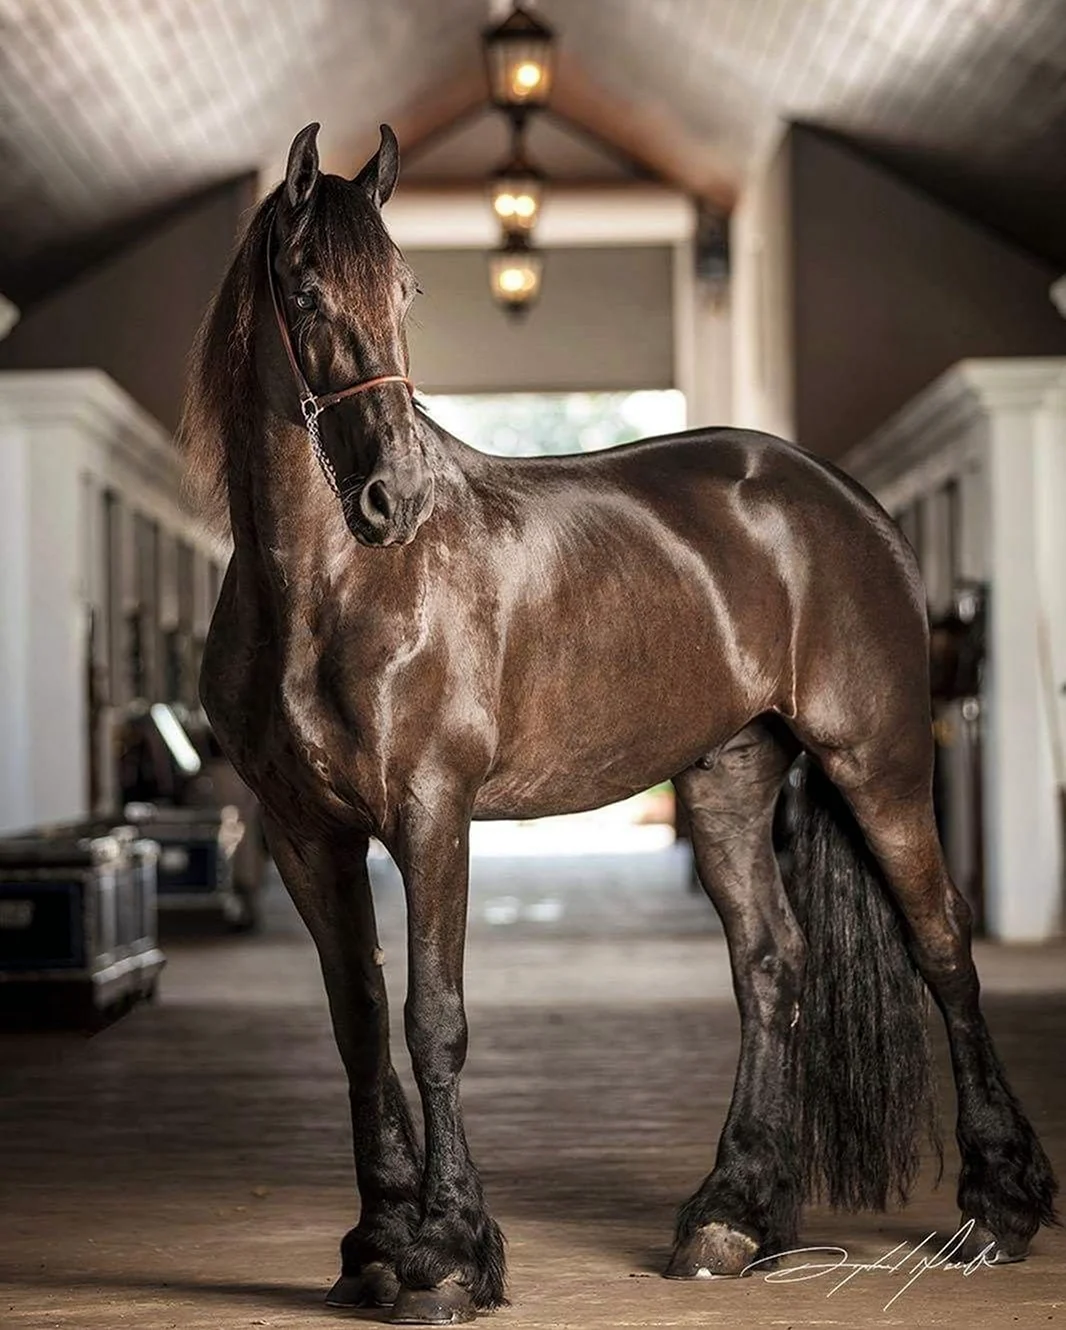 Эгиденбергер порода лошади. Красивое животное